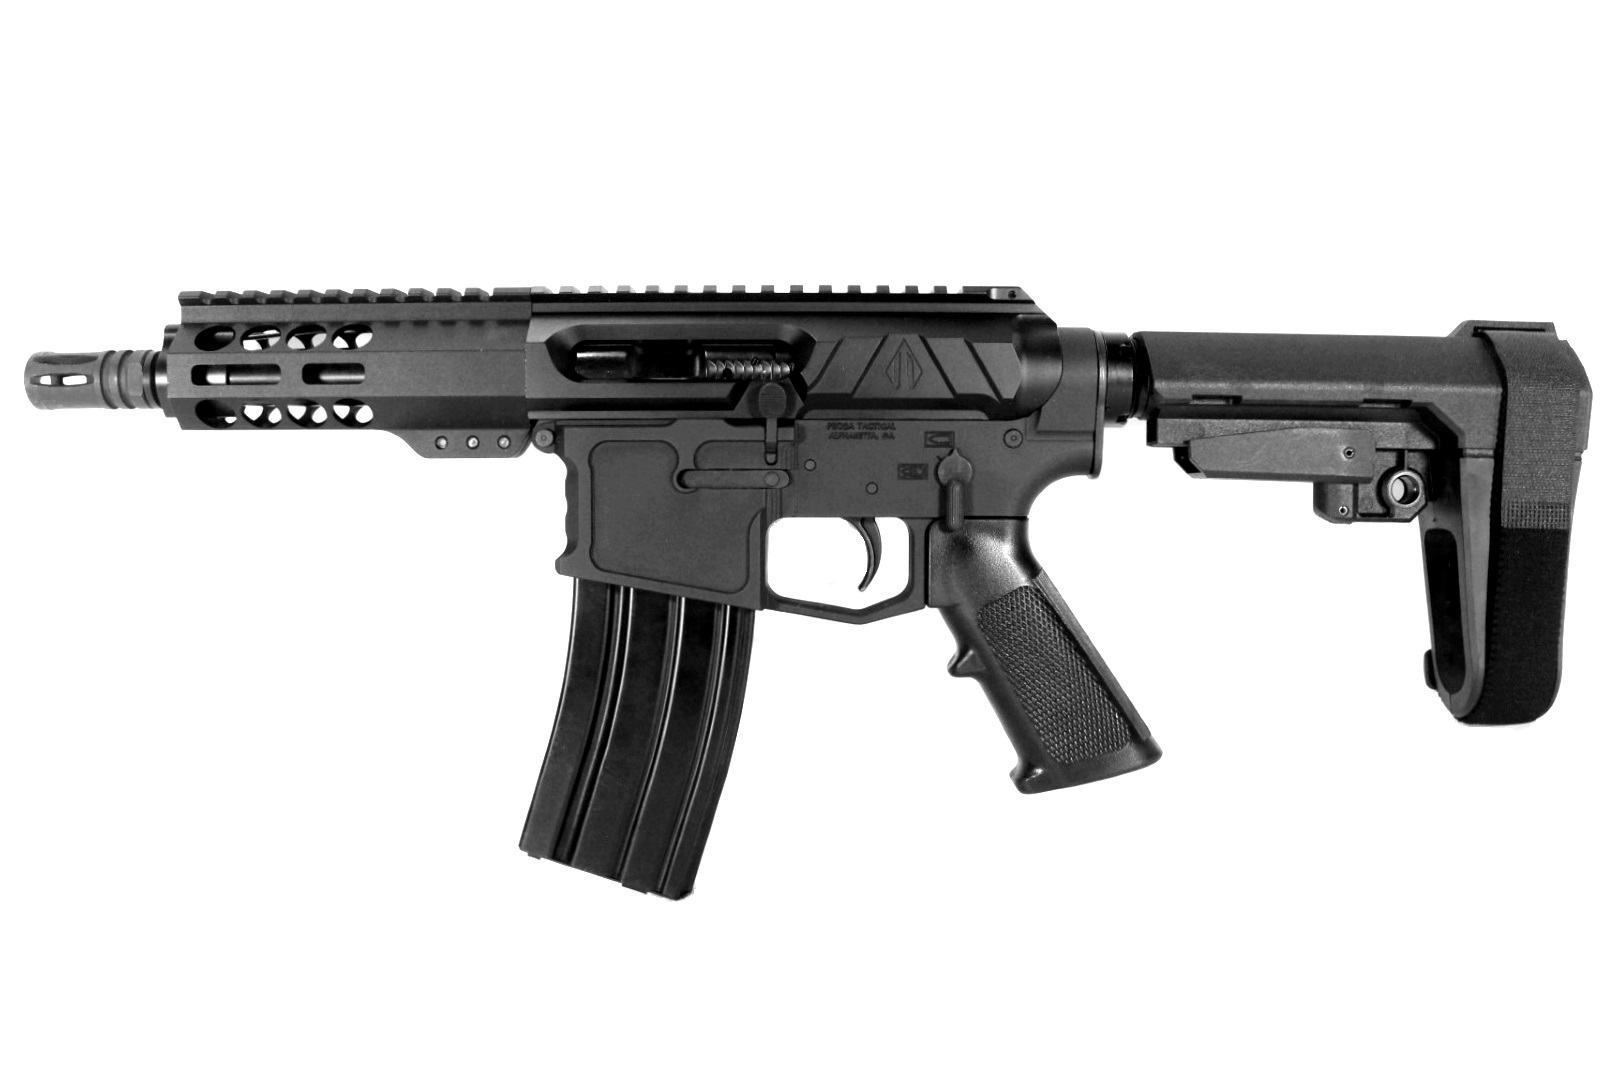 6 inch 300 Blackout Side Charging AR15 Pistol | Left Handed